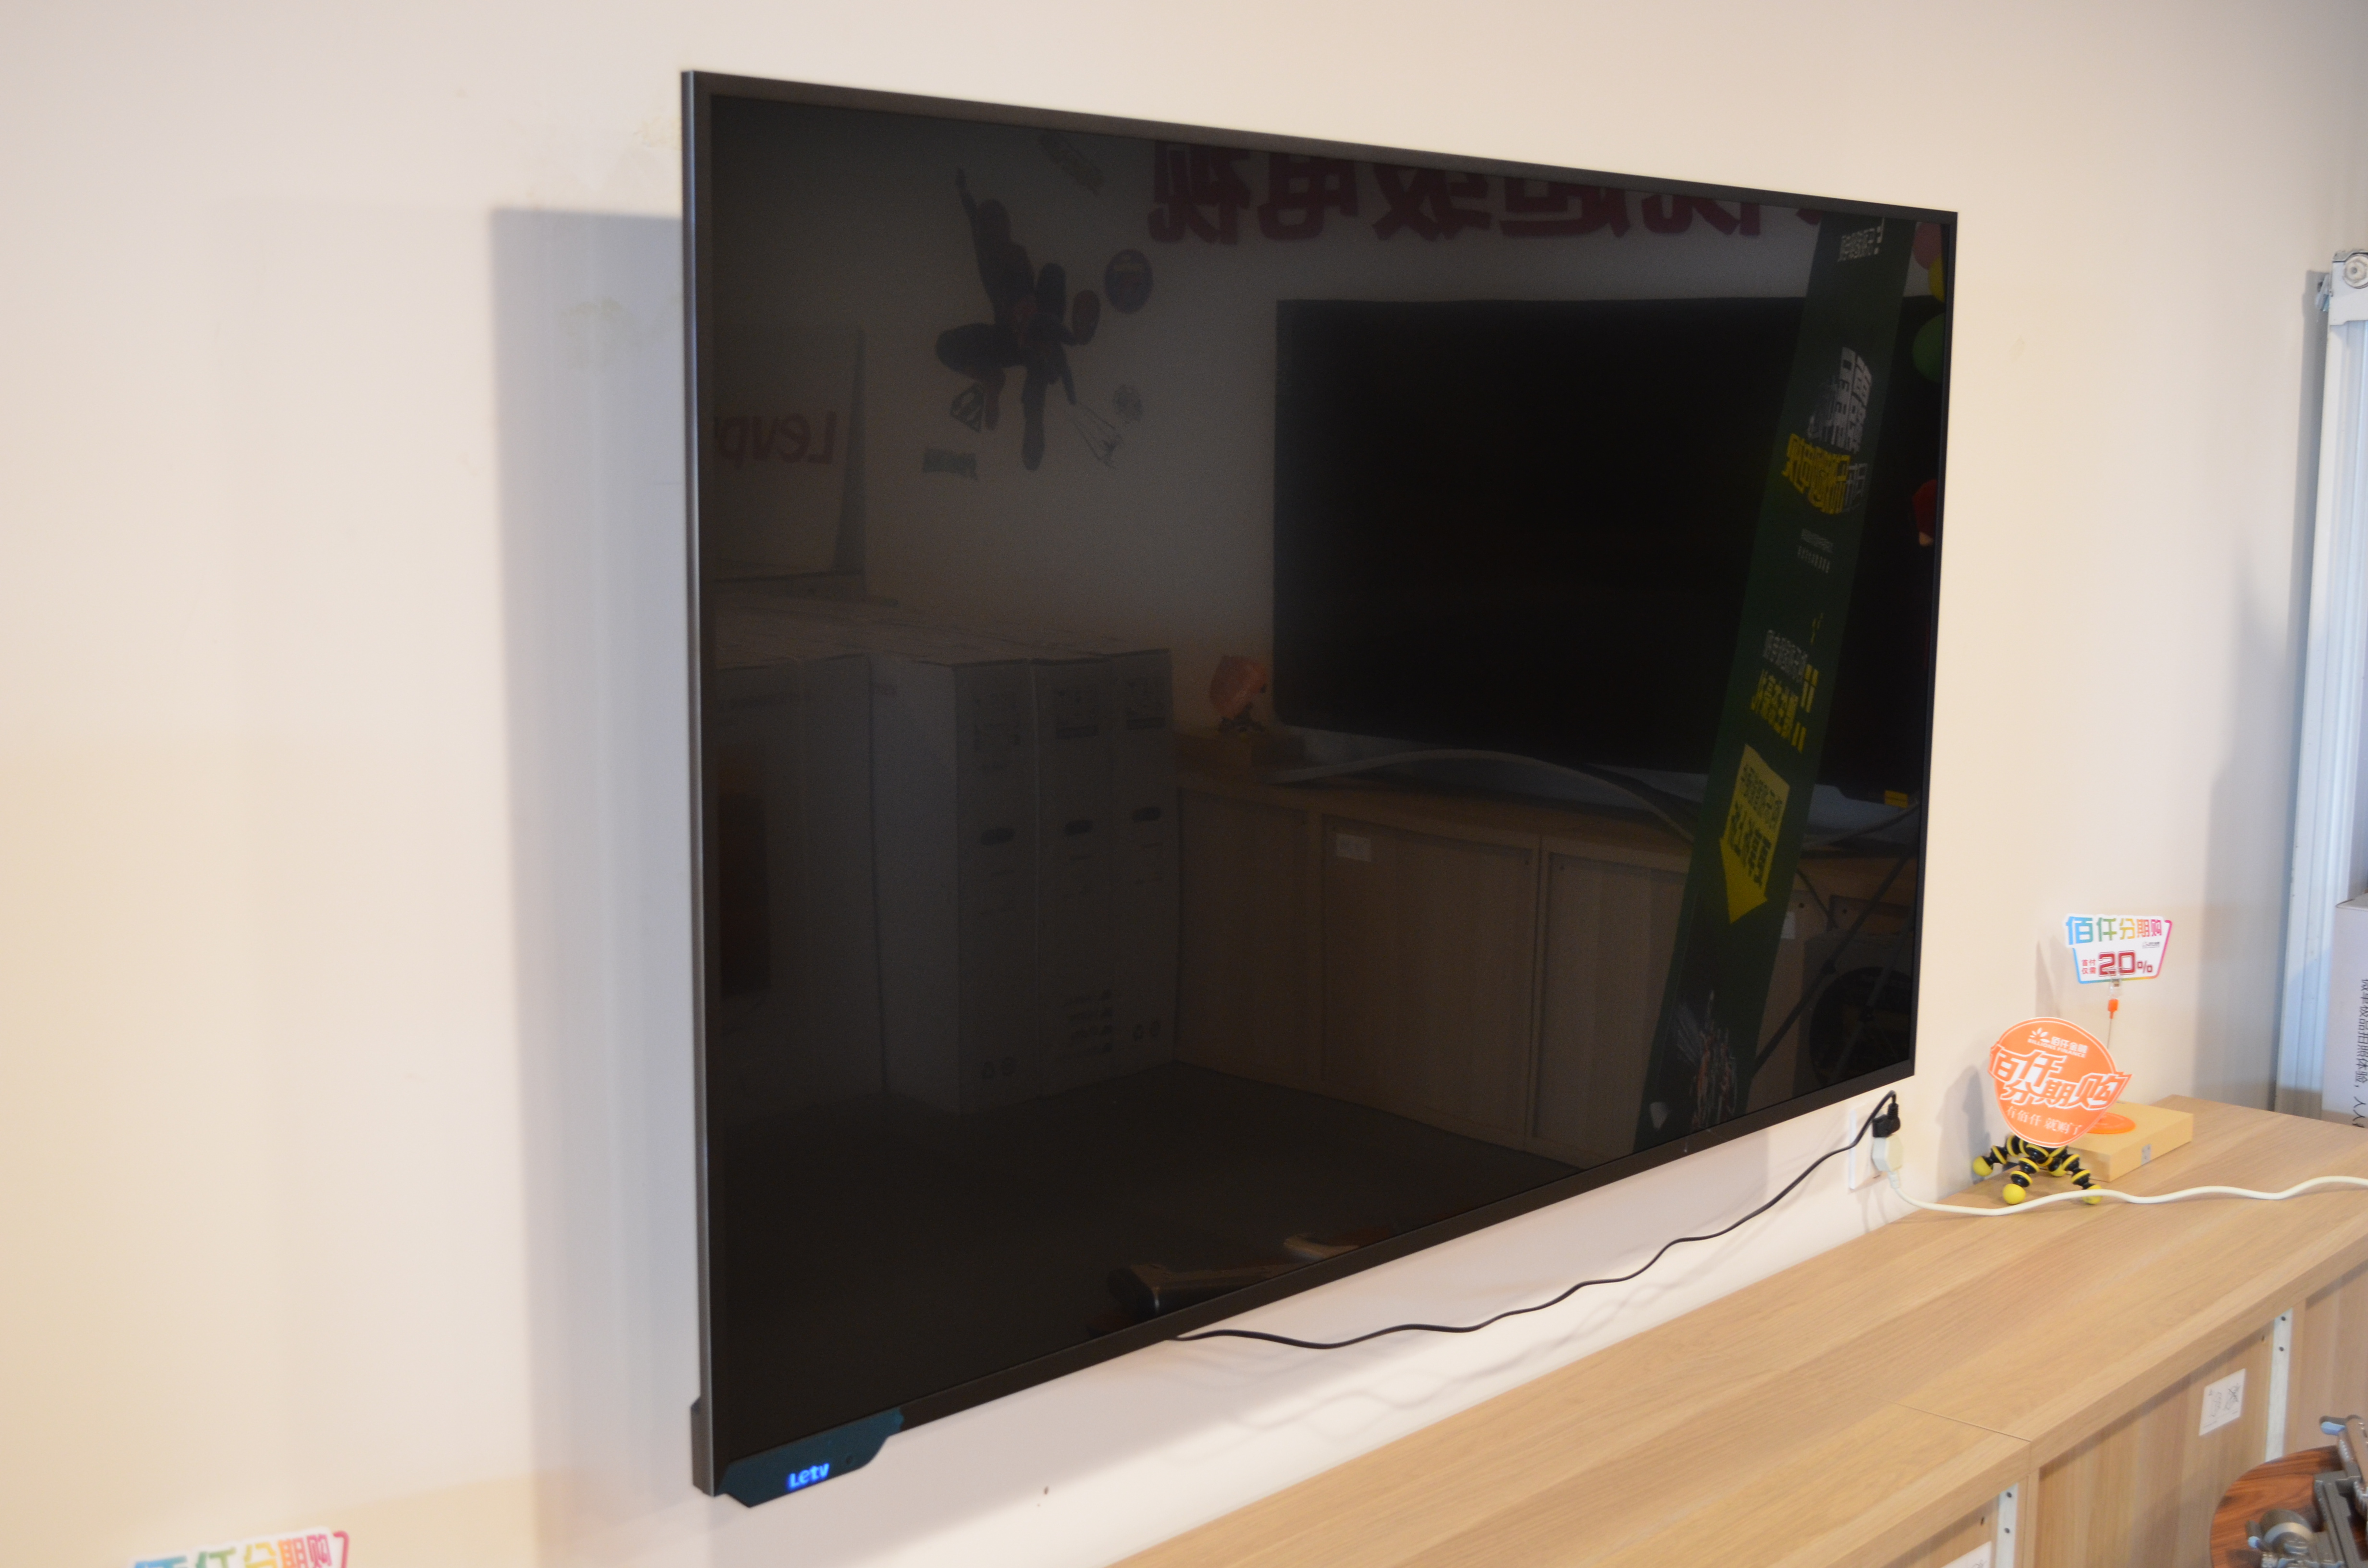 高性价比 乐视超级电视X65大连首秀 - 微信公众